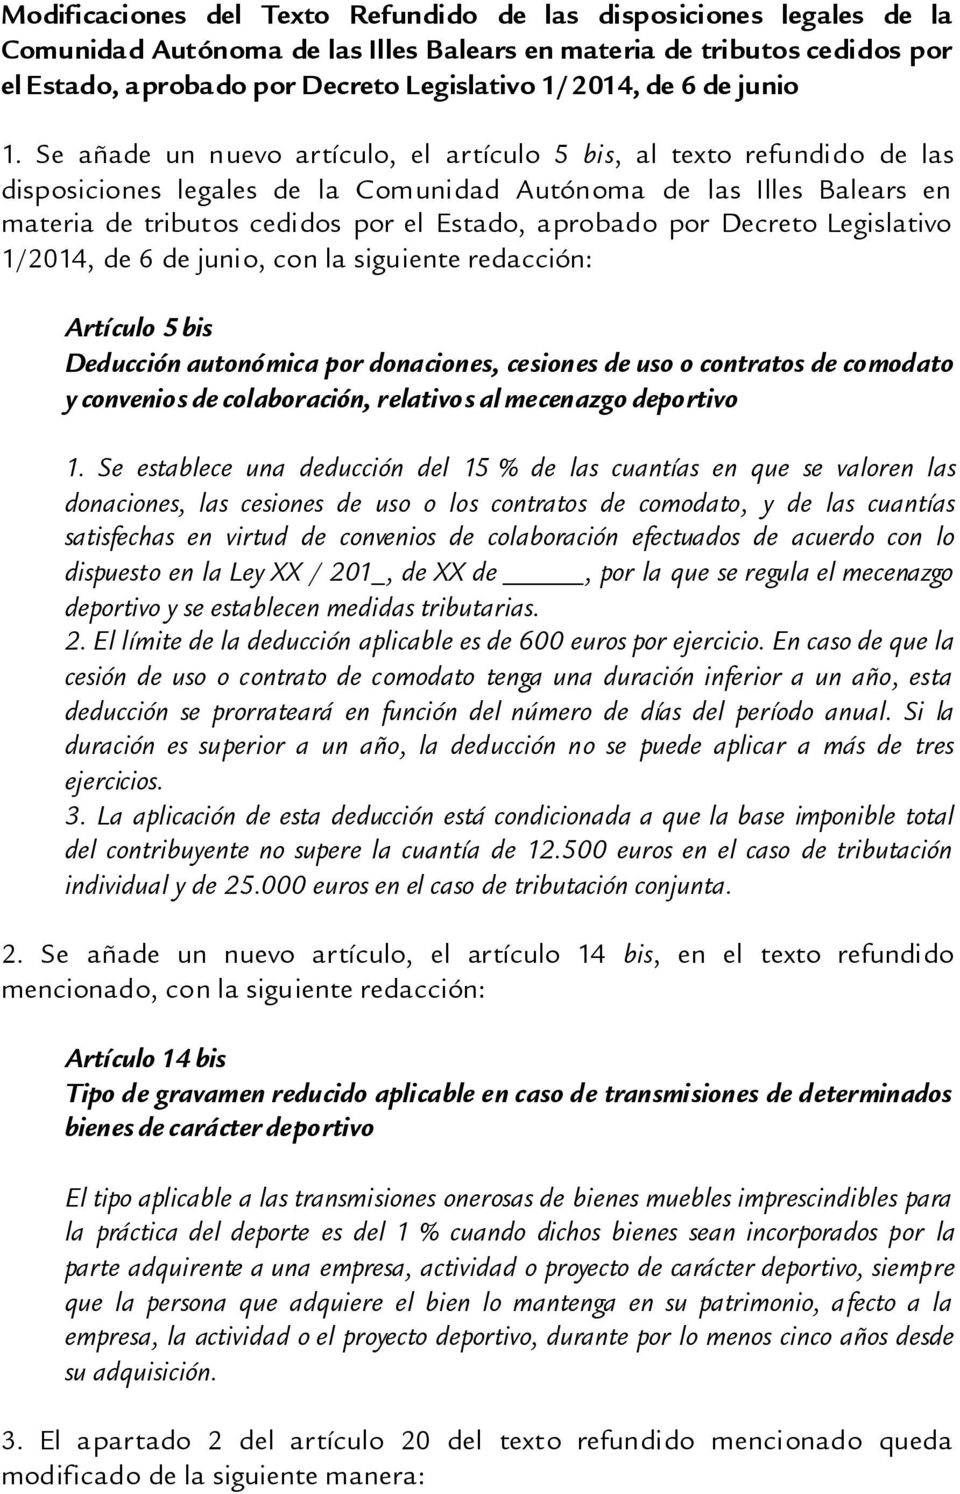 Se añade un nuevo artículo, el artículo 5 bis, al texto refundido de las disposiciones legales de la Comunidad Autónoma de las Illes Balears en materia de tributos cedidos por el Estado, aprobado por